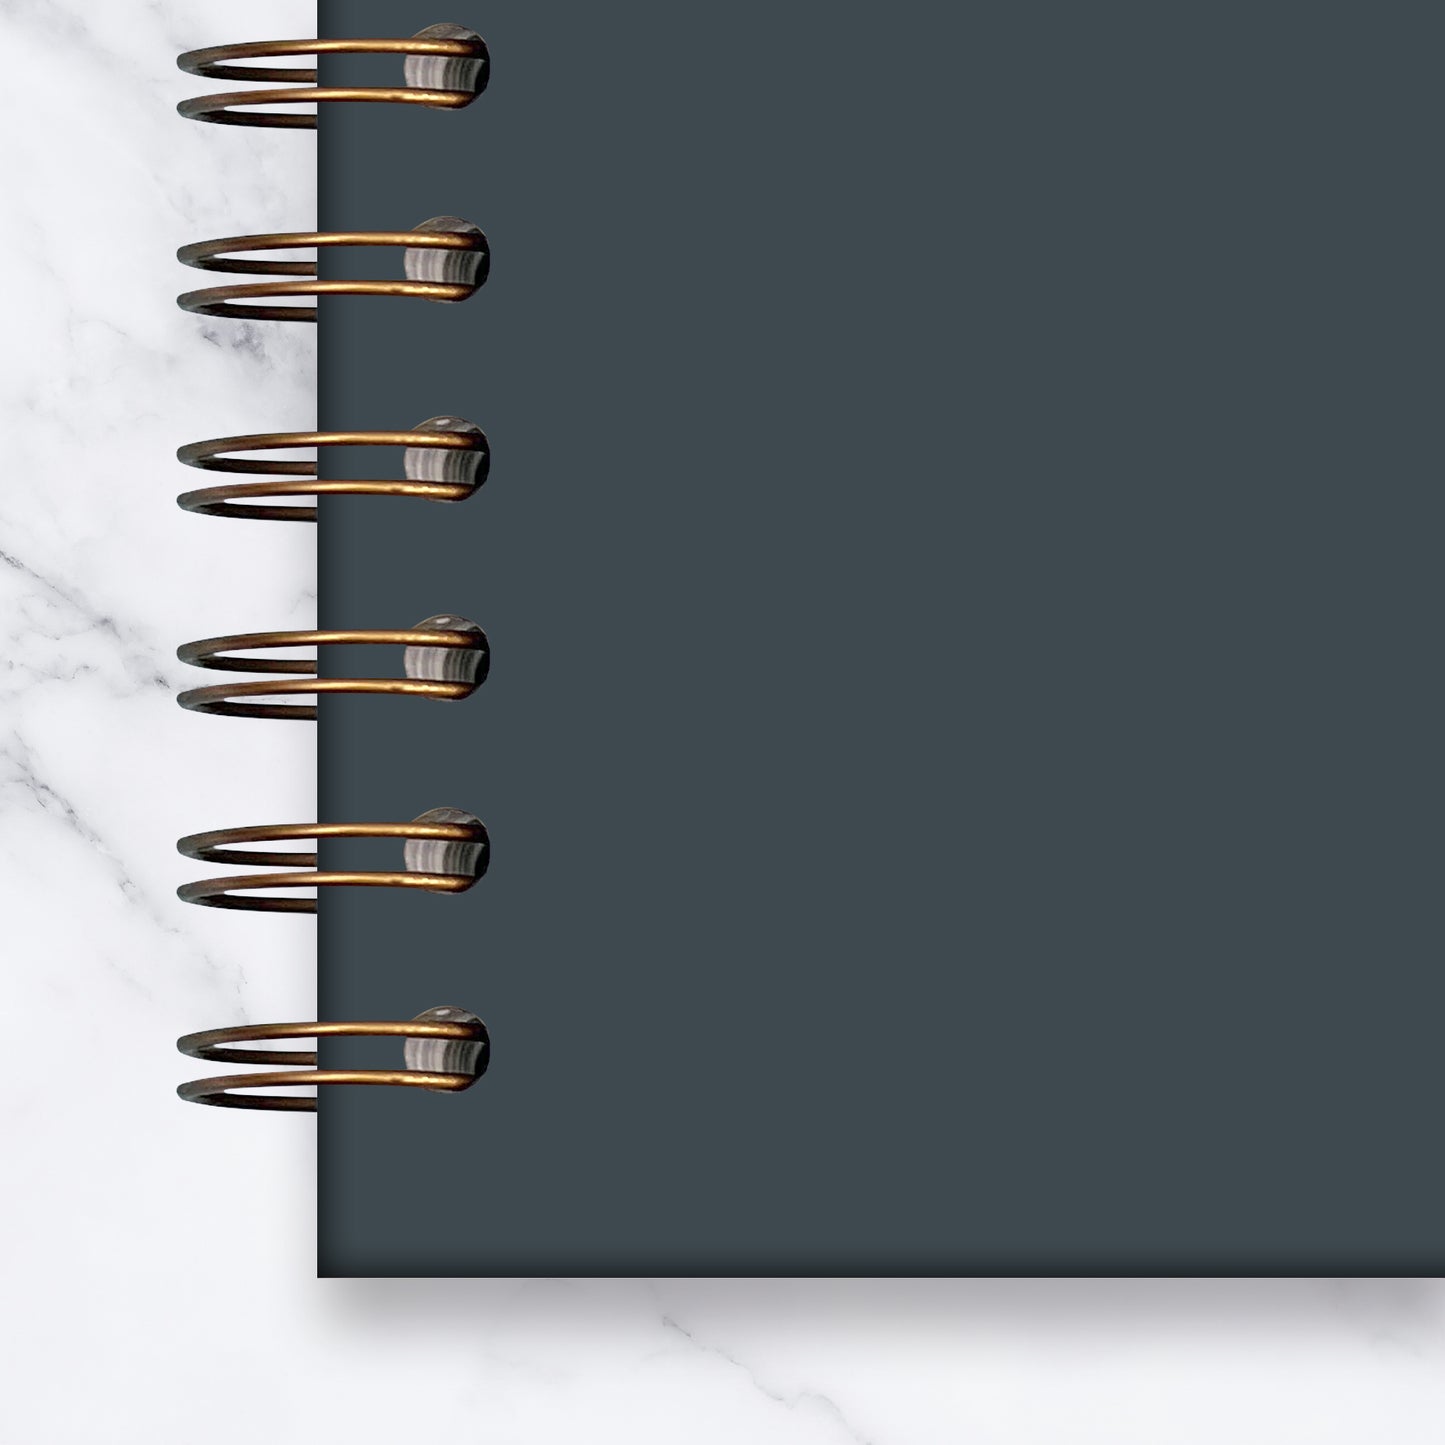 Individually Bespoke Designed Notebook